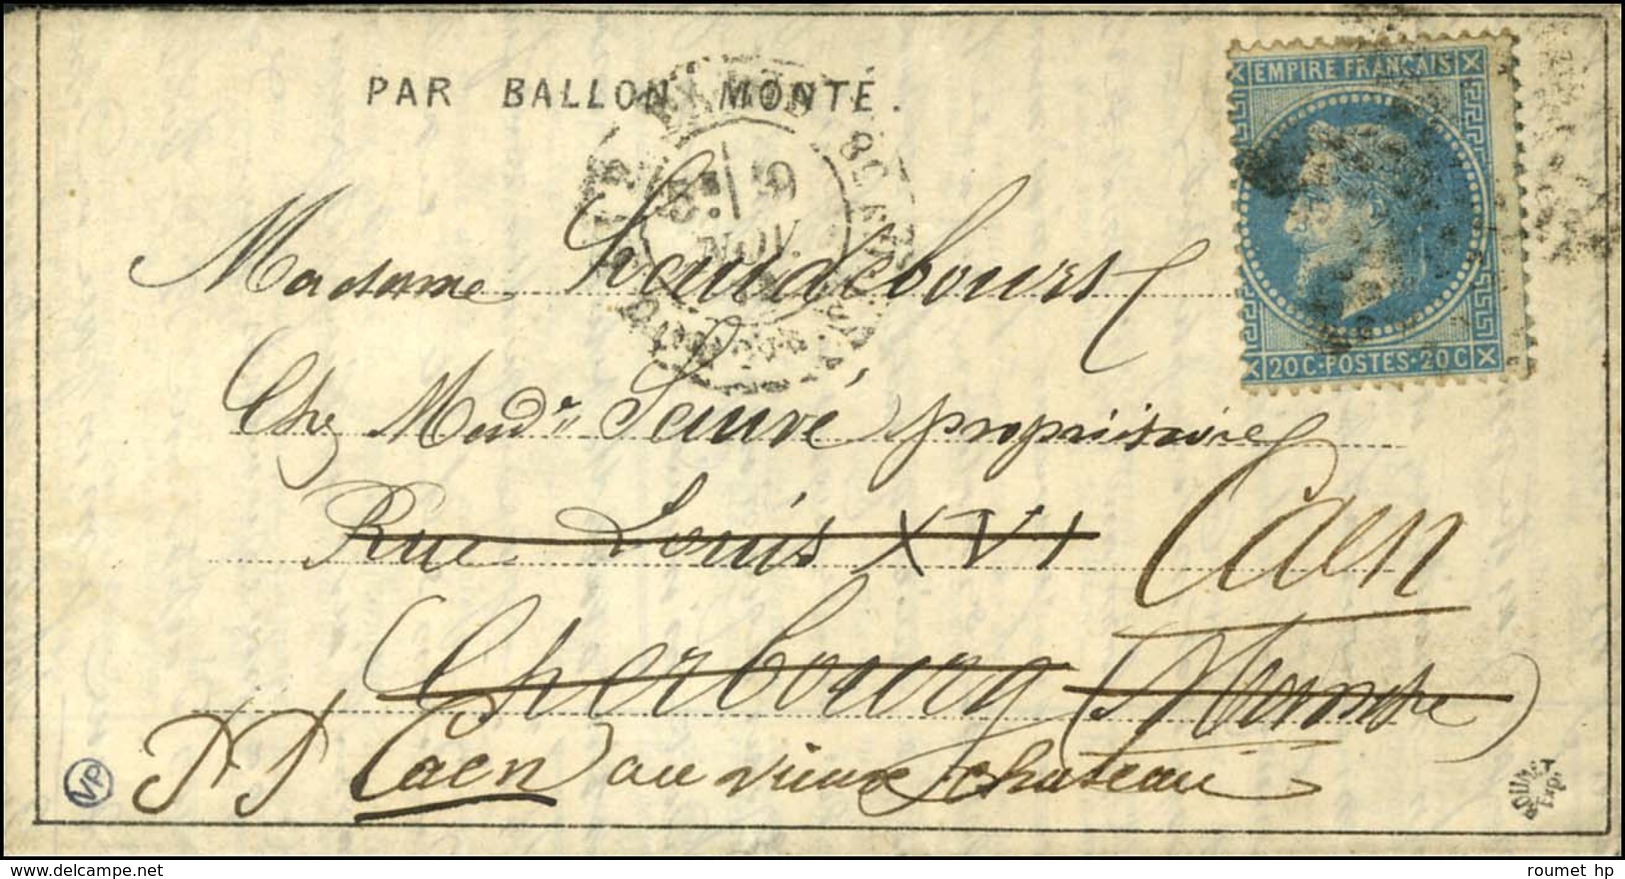 Etoile 20 / N° 29 Càd PARIS / R. St DOMque St Gn 58 9 NOV. 70 Sur Dépêche-Ballon N° 4 Pour Cherbourg Réexpédiée à Caen,  - Guerre De 1870